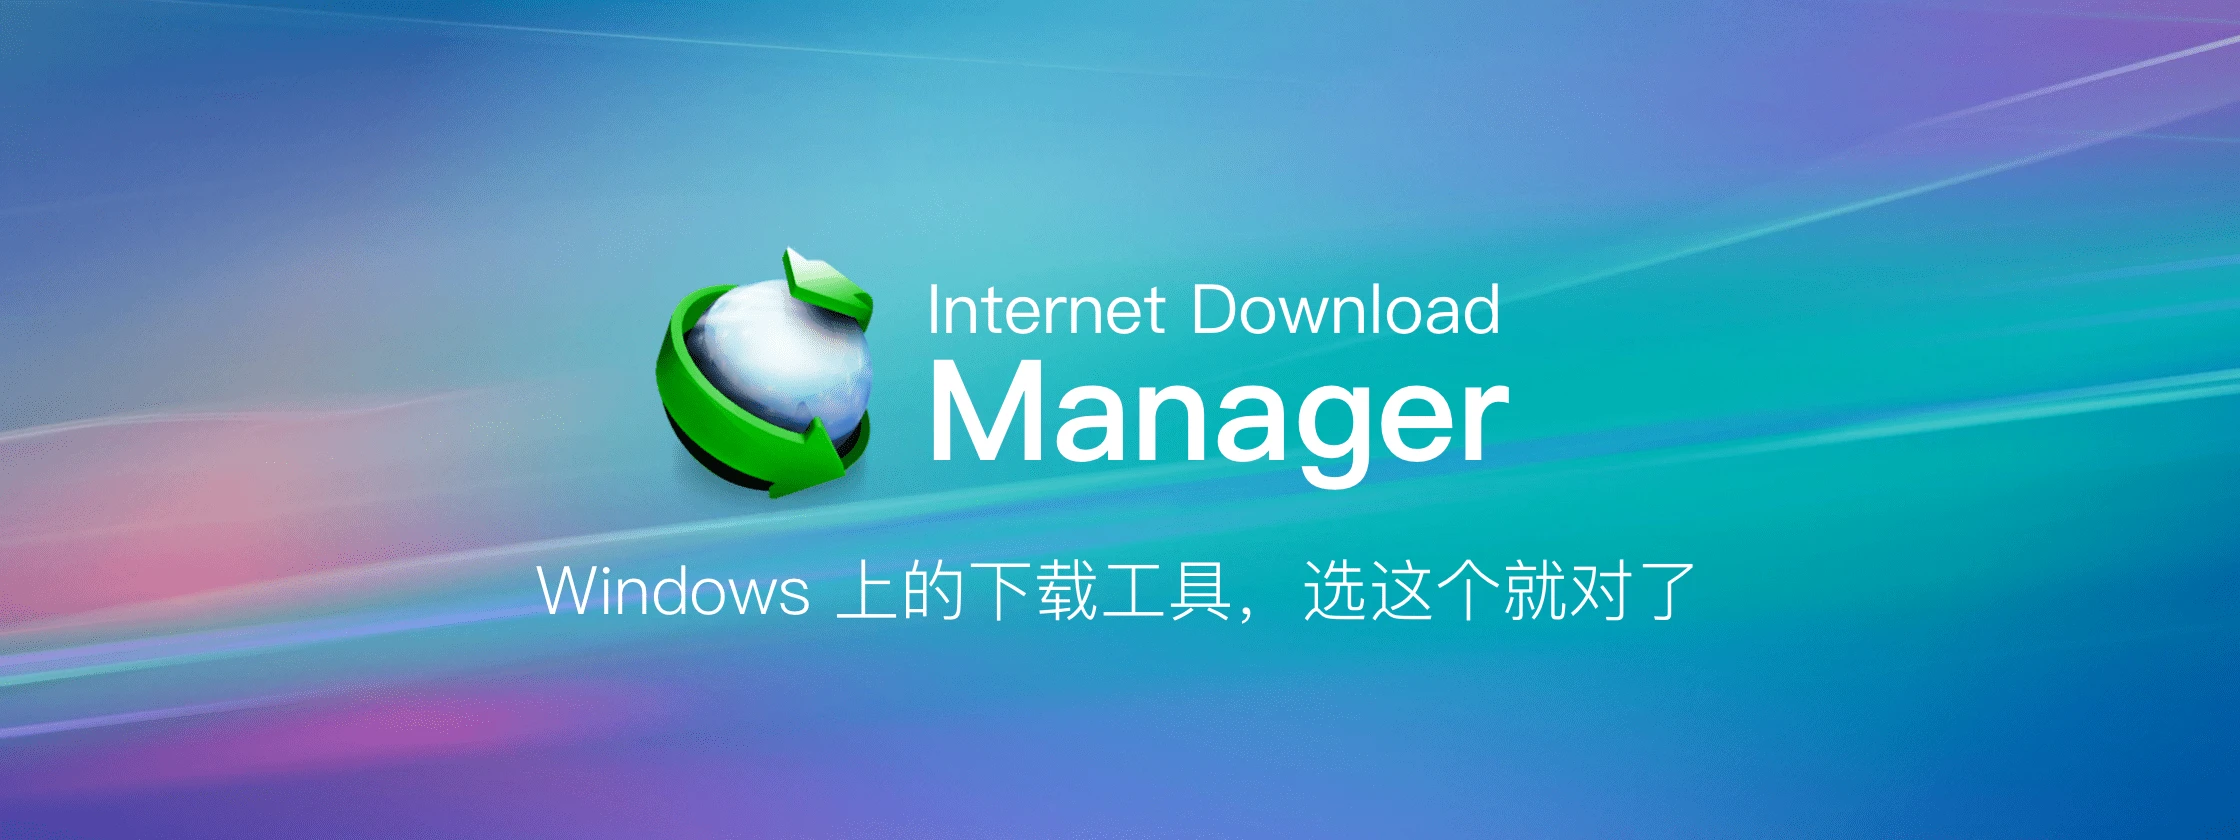 1700830026-Internet_Download_Manager.webp